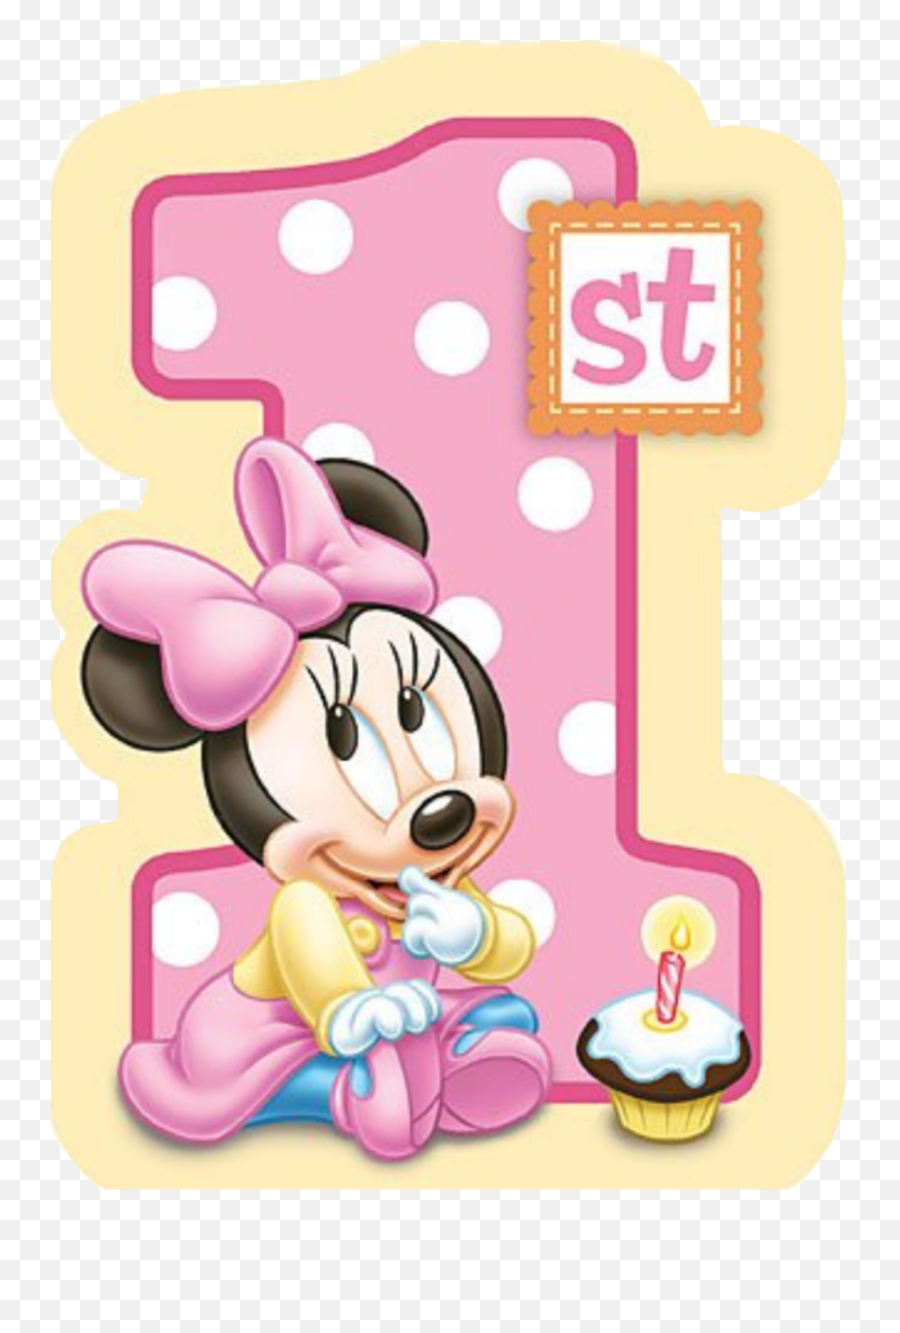 1st 1st Minnie Birthday Image By Steffclegg140 Emoji,1st Birthday Clipart